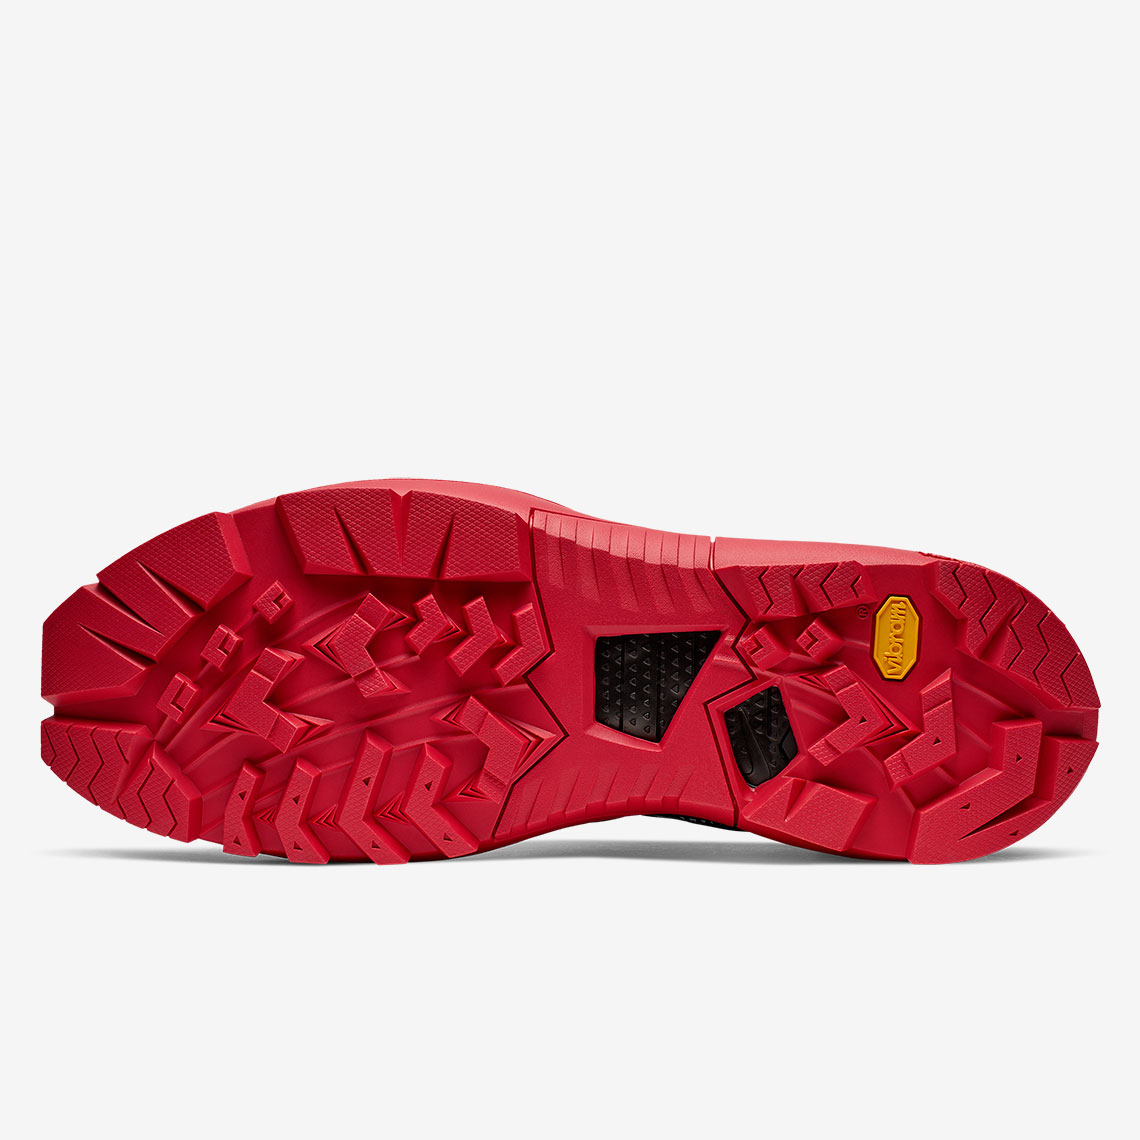 Mmw Nike Free Tr 3 Sp Black Red Aq9200 001 4